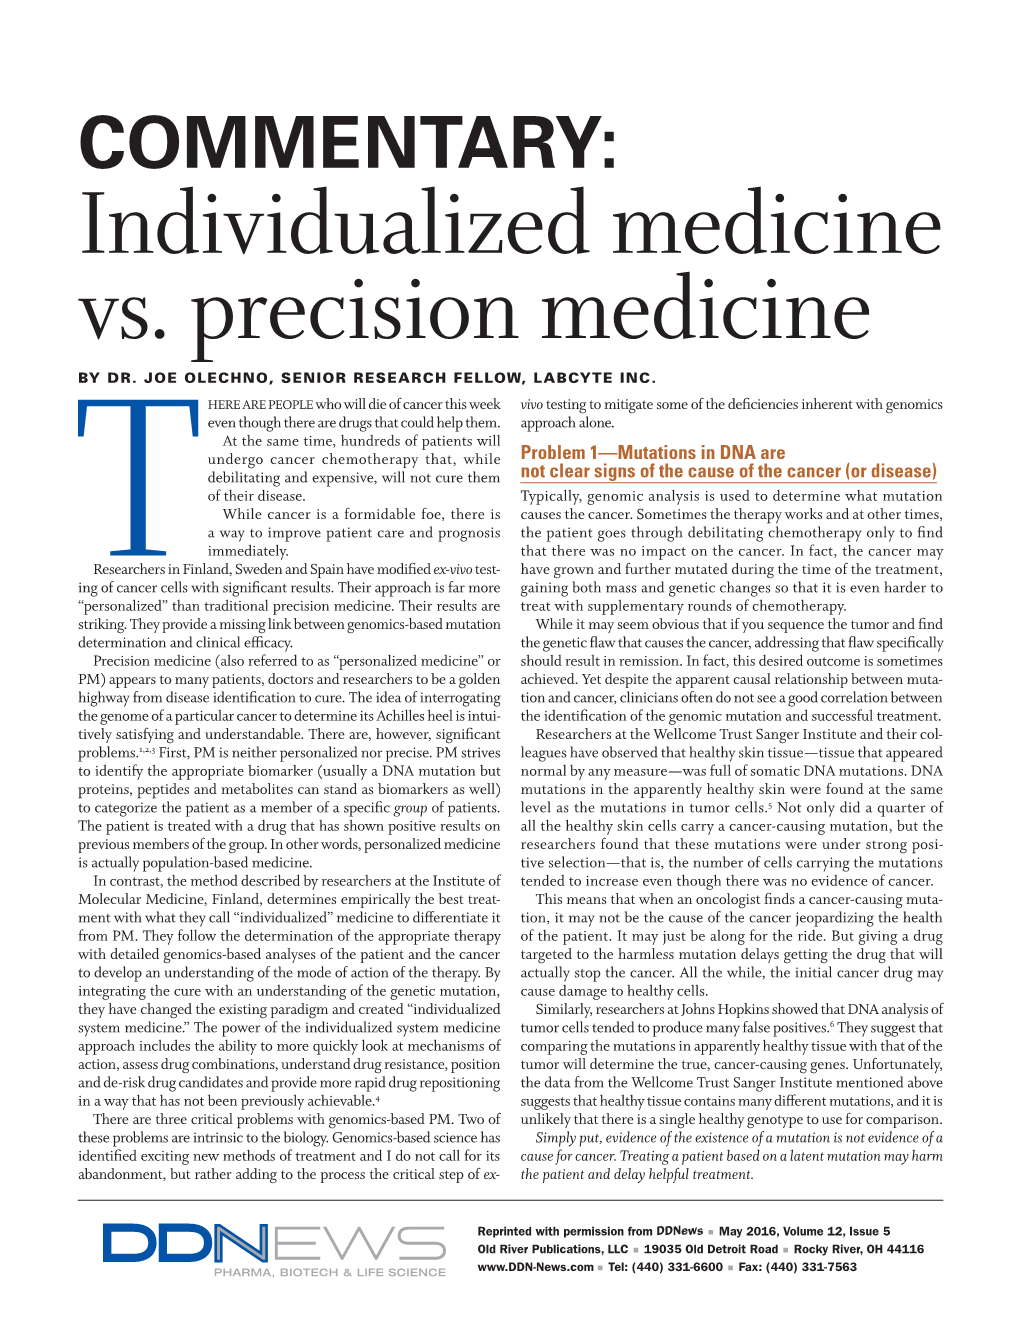 Individualized Medicine Vs. Precision Medicine by DR